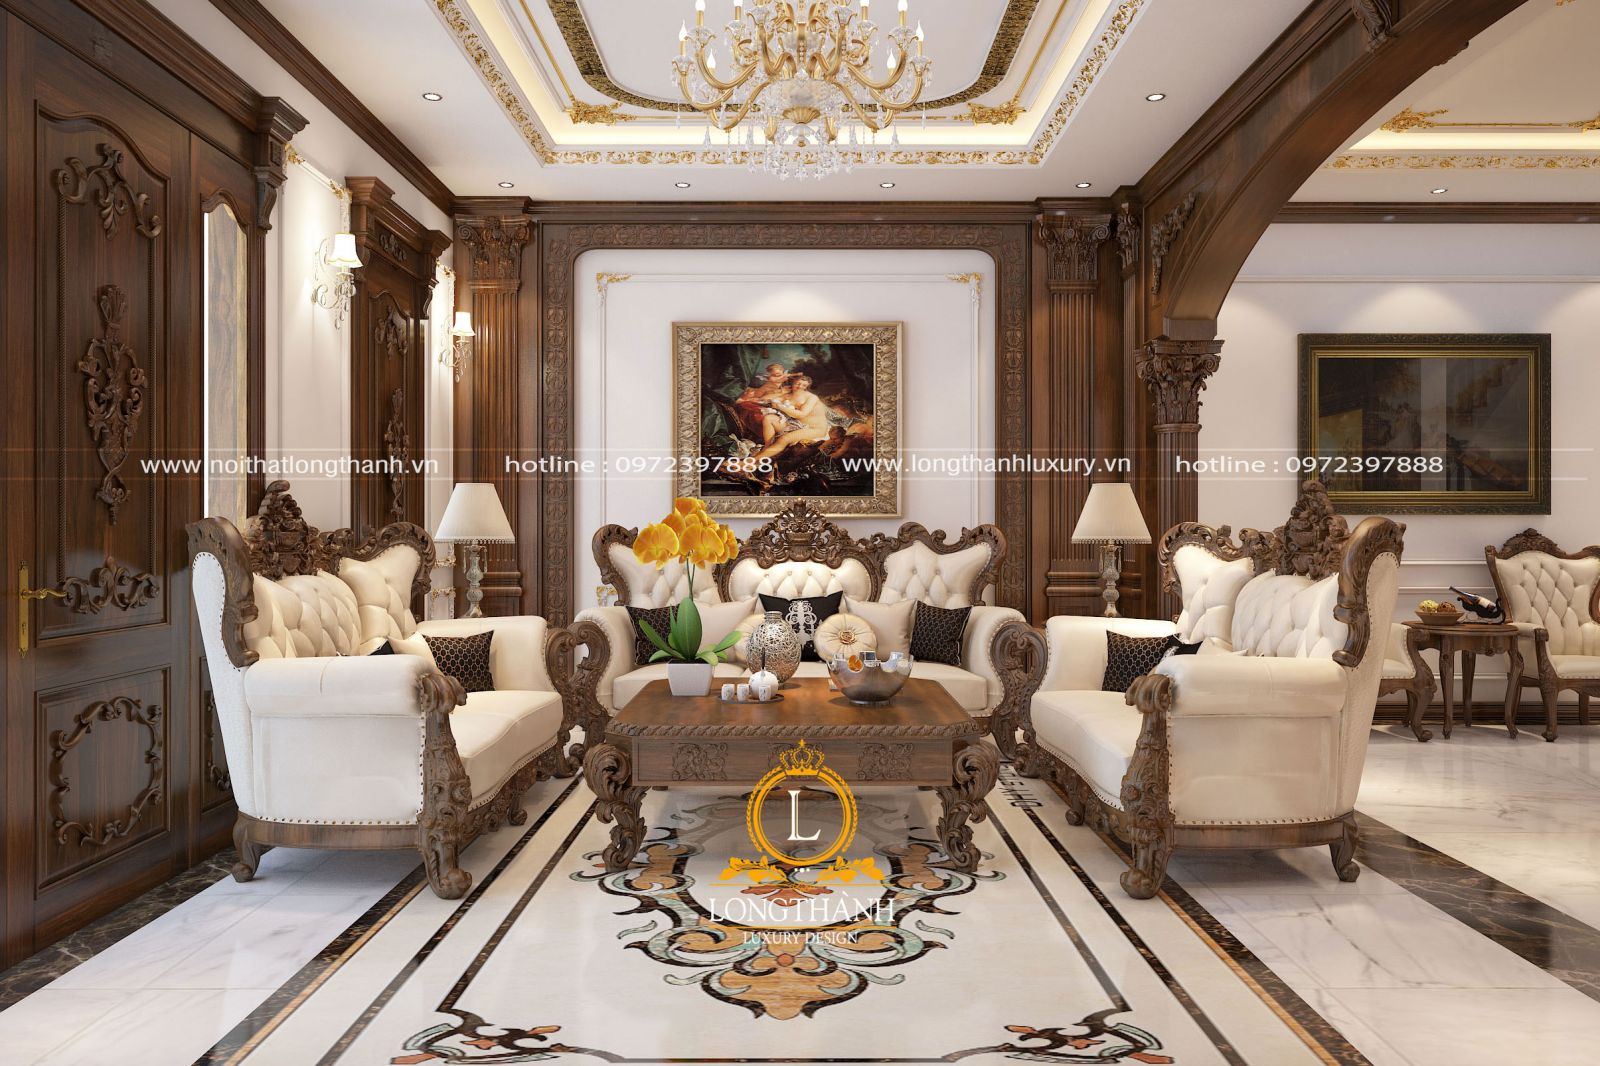 Mẫu sofa tân cổ điển chạm khắc cầu kỳ được lựa chọn sử dụng trong không gian phòng khách biệt thự